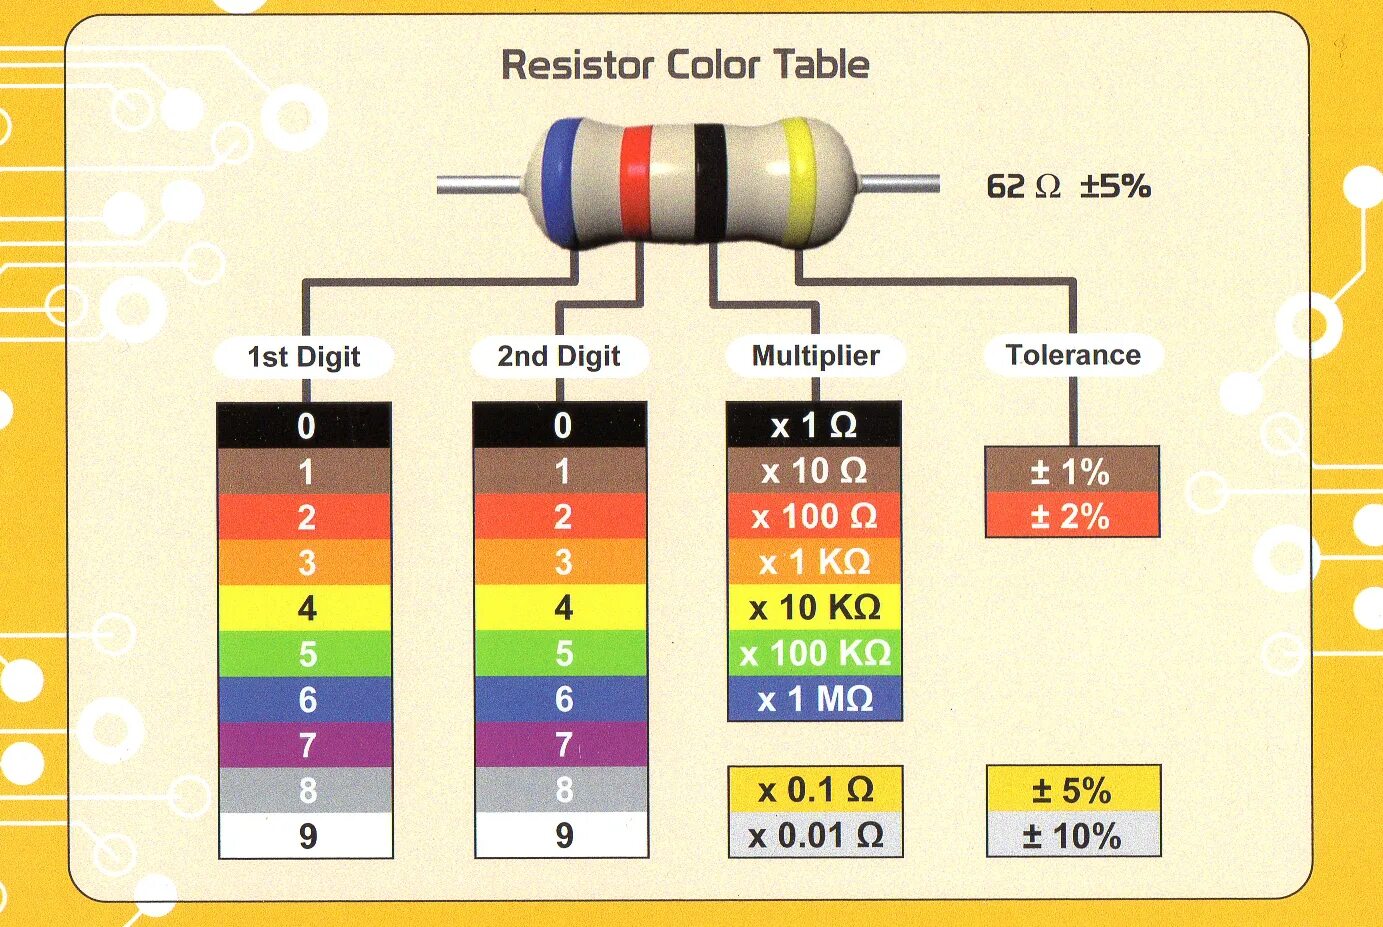 Цветовая маркировка резисторов 4 полосы. Цветовая маркировка резисторов 2 полосы. Цветовая маркировка резисторов 5 полос. Резистор 0.22 Ома цветовая маркировка.